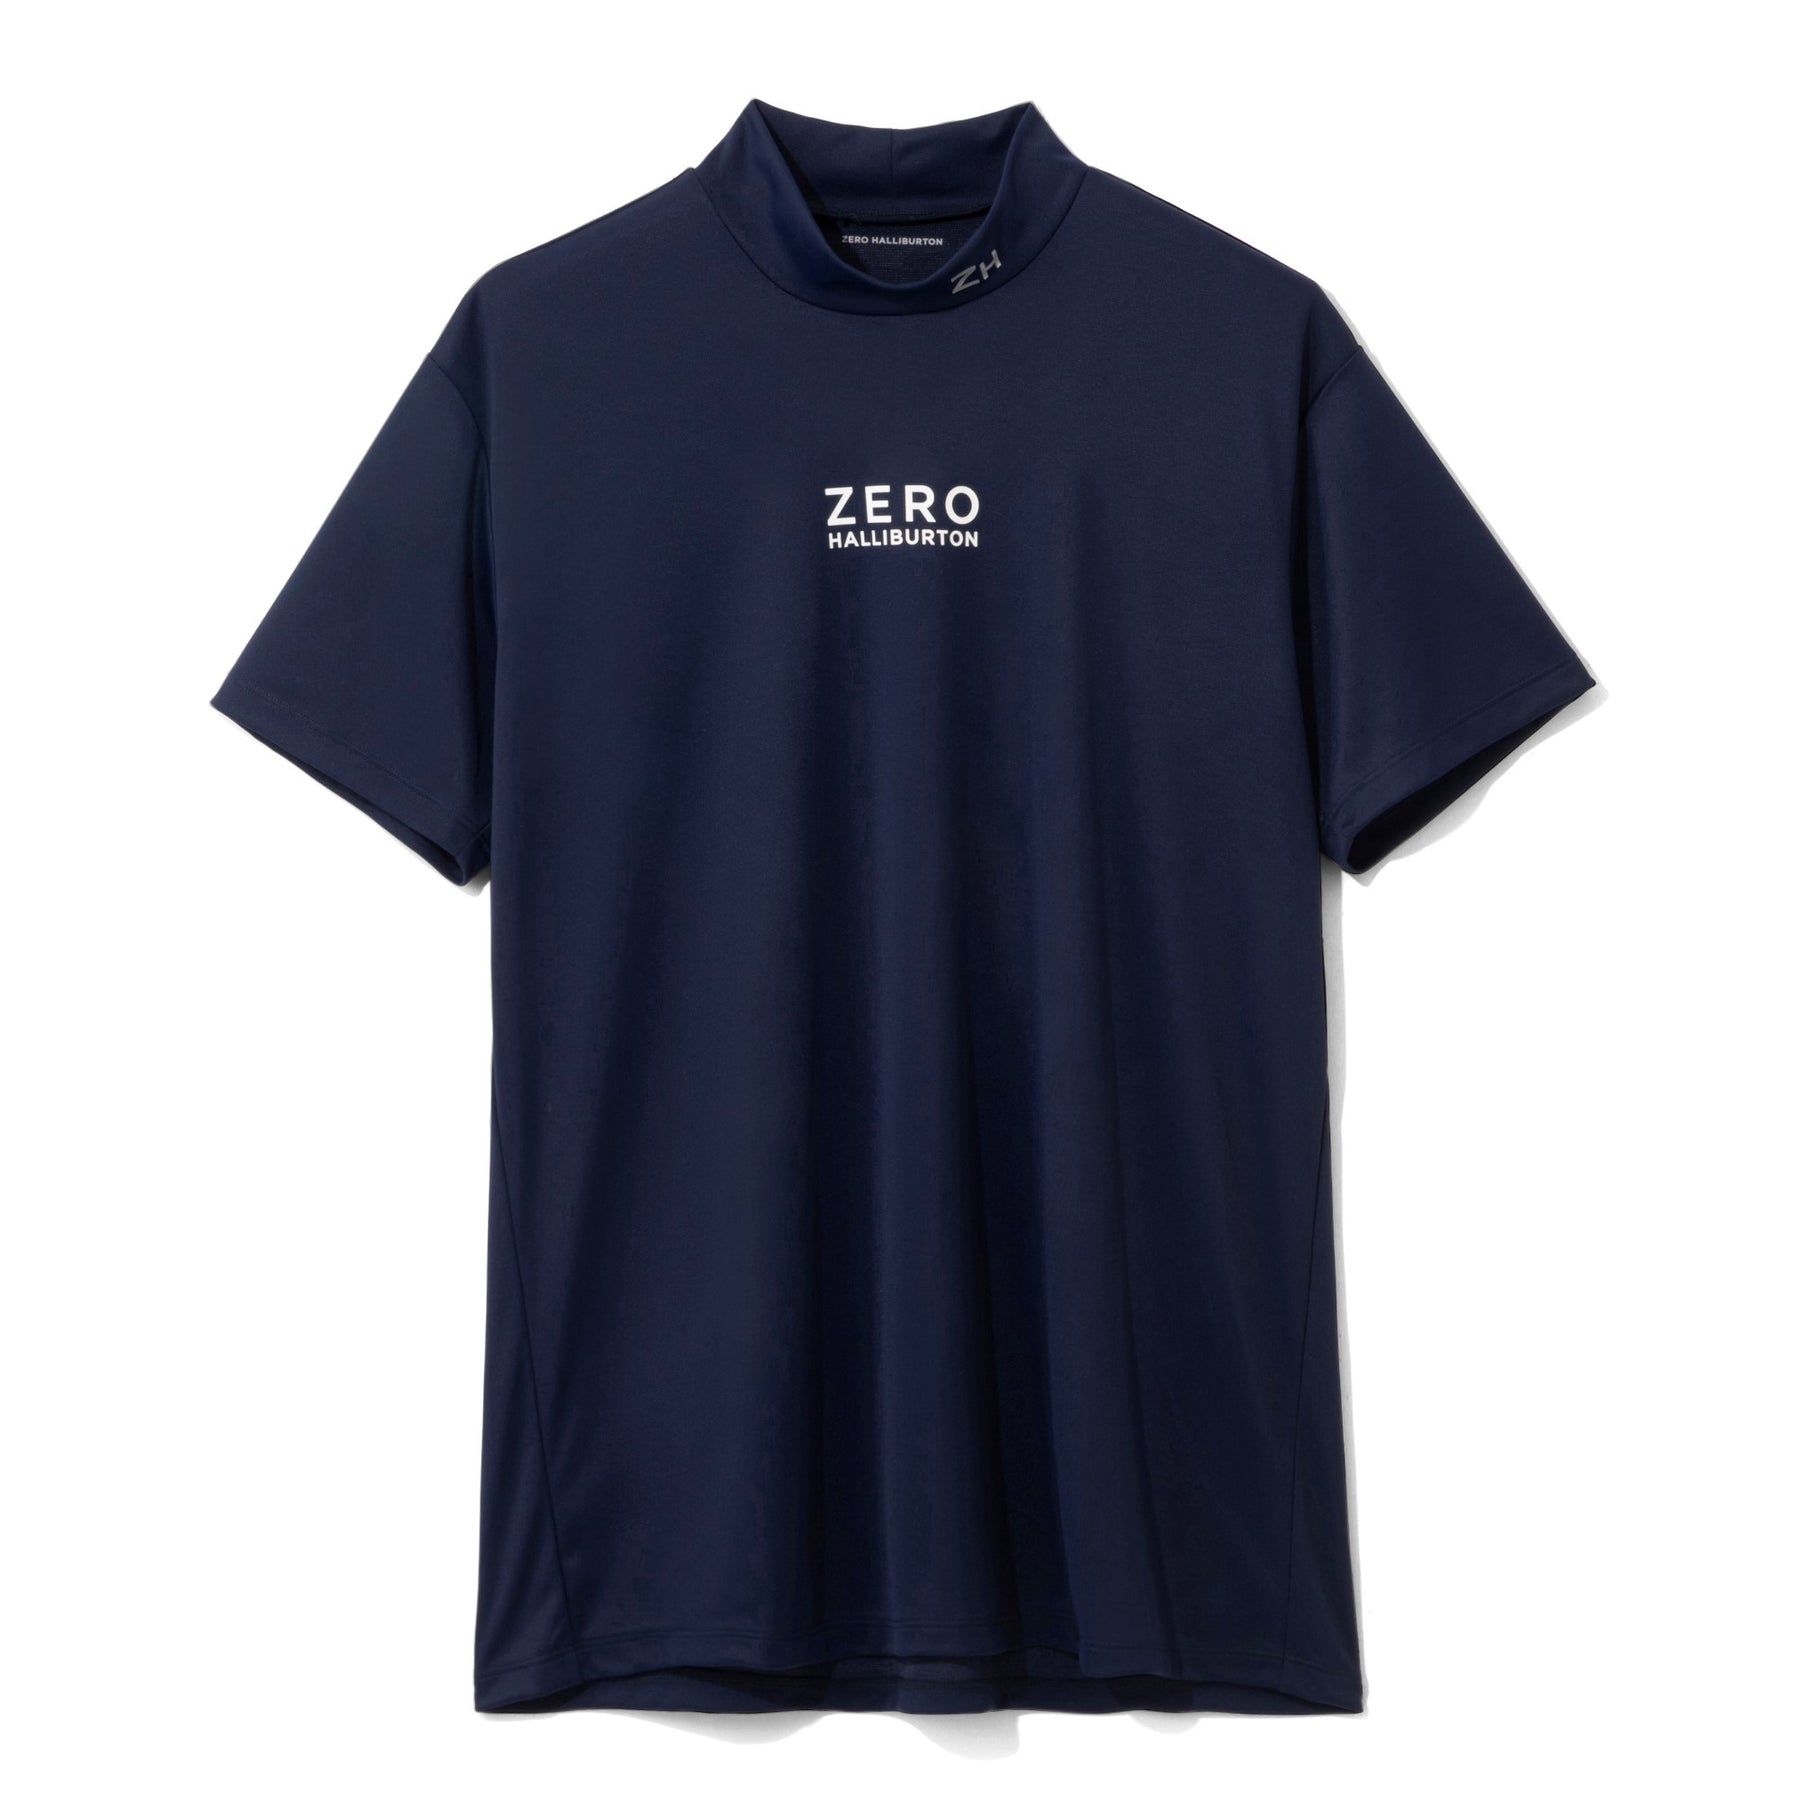 ZHG-A4S4 | Anti-See-Through Mockneck Shirts 82814– ZERO HALLIBURTON